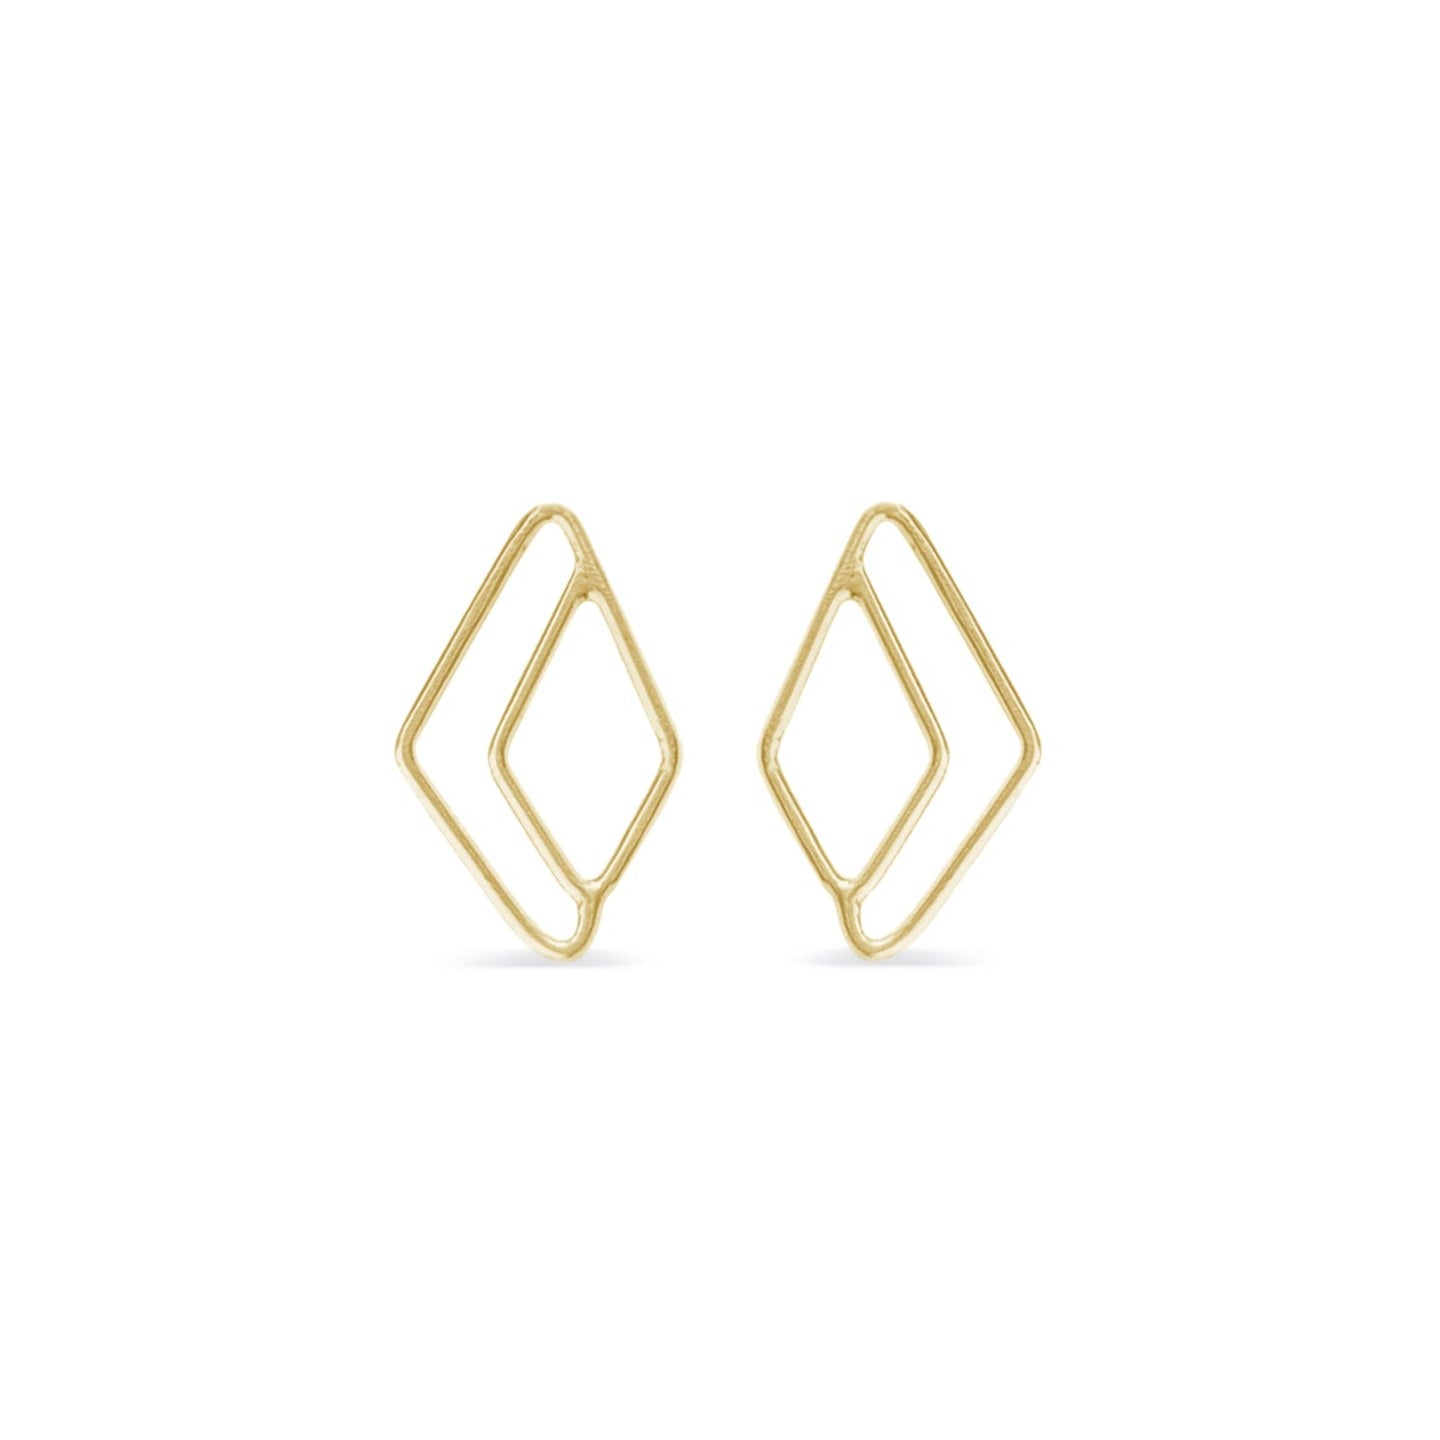 Halo diamond stud earrings in14K gold